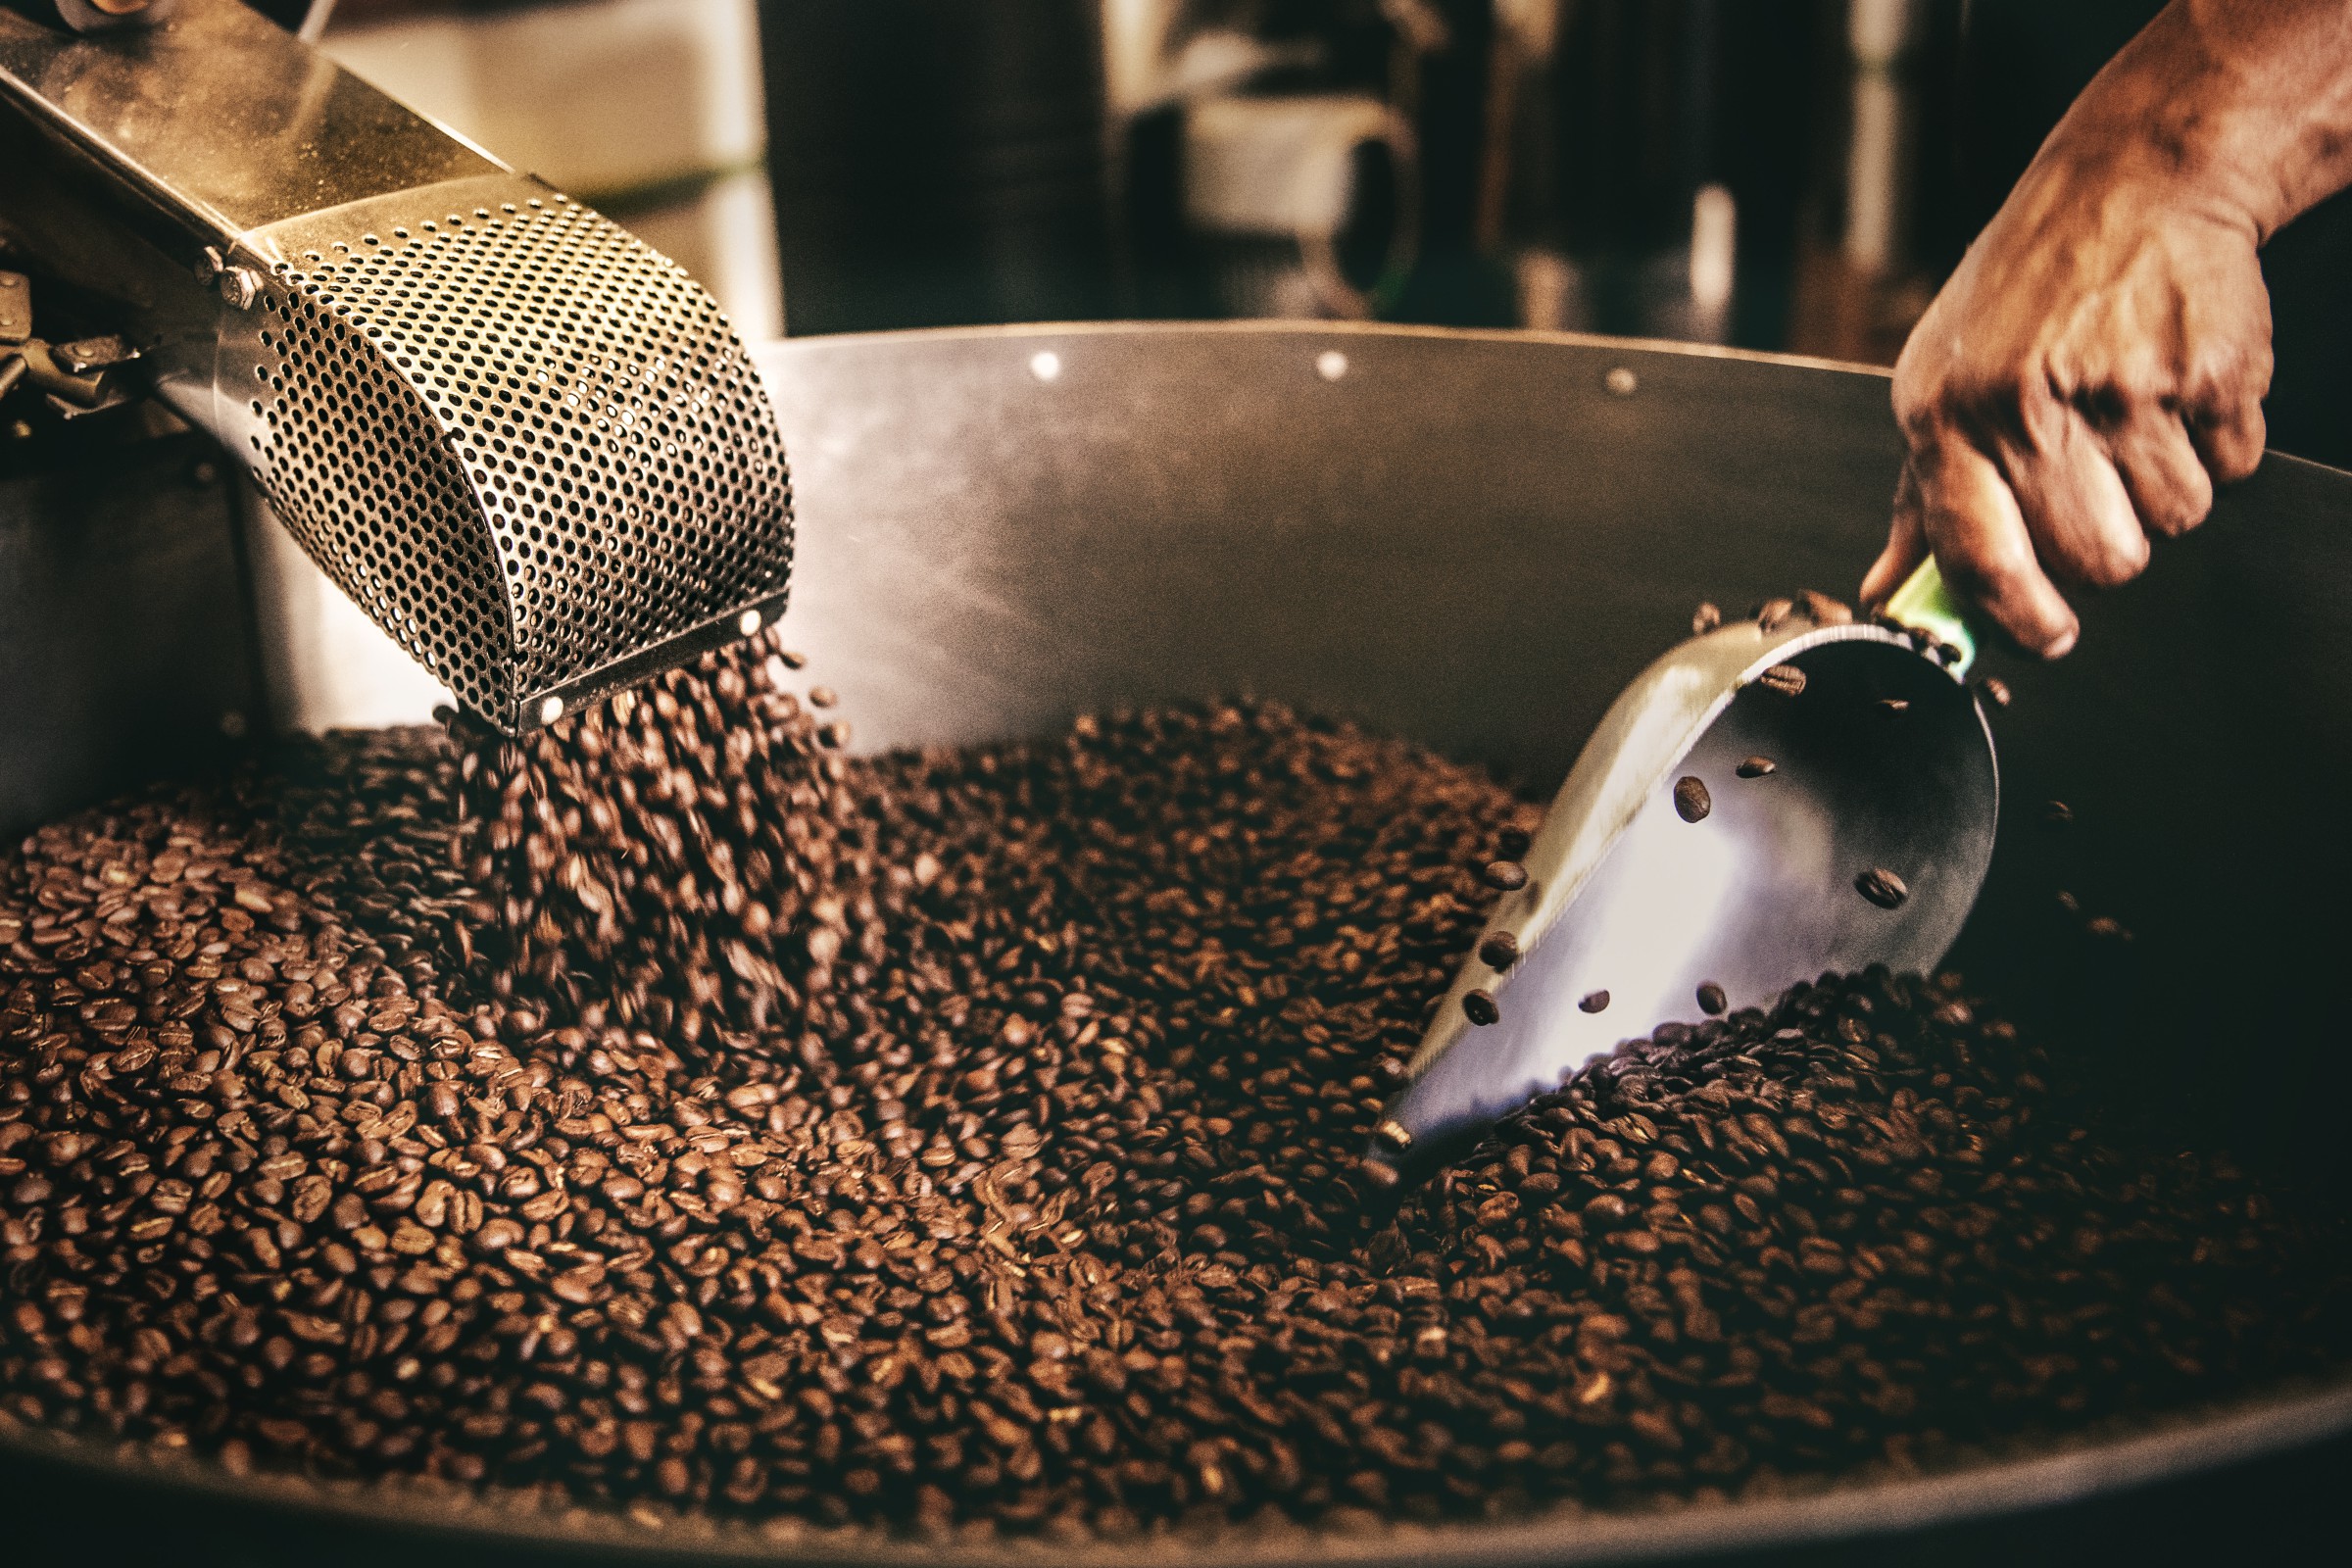 بهترین کشور های تولید کننده قهوه در جهان کدامند؟